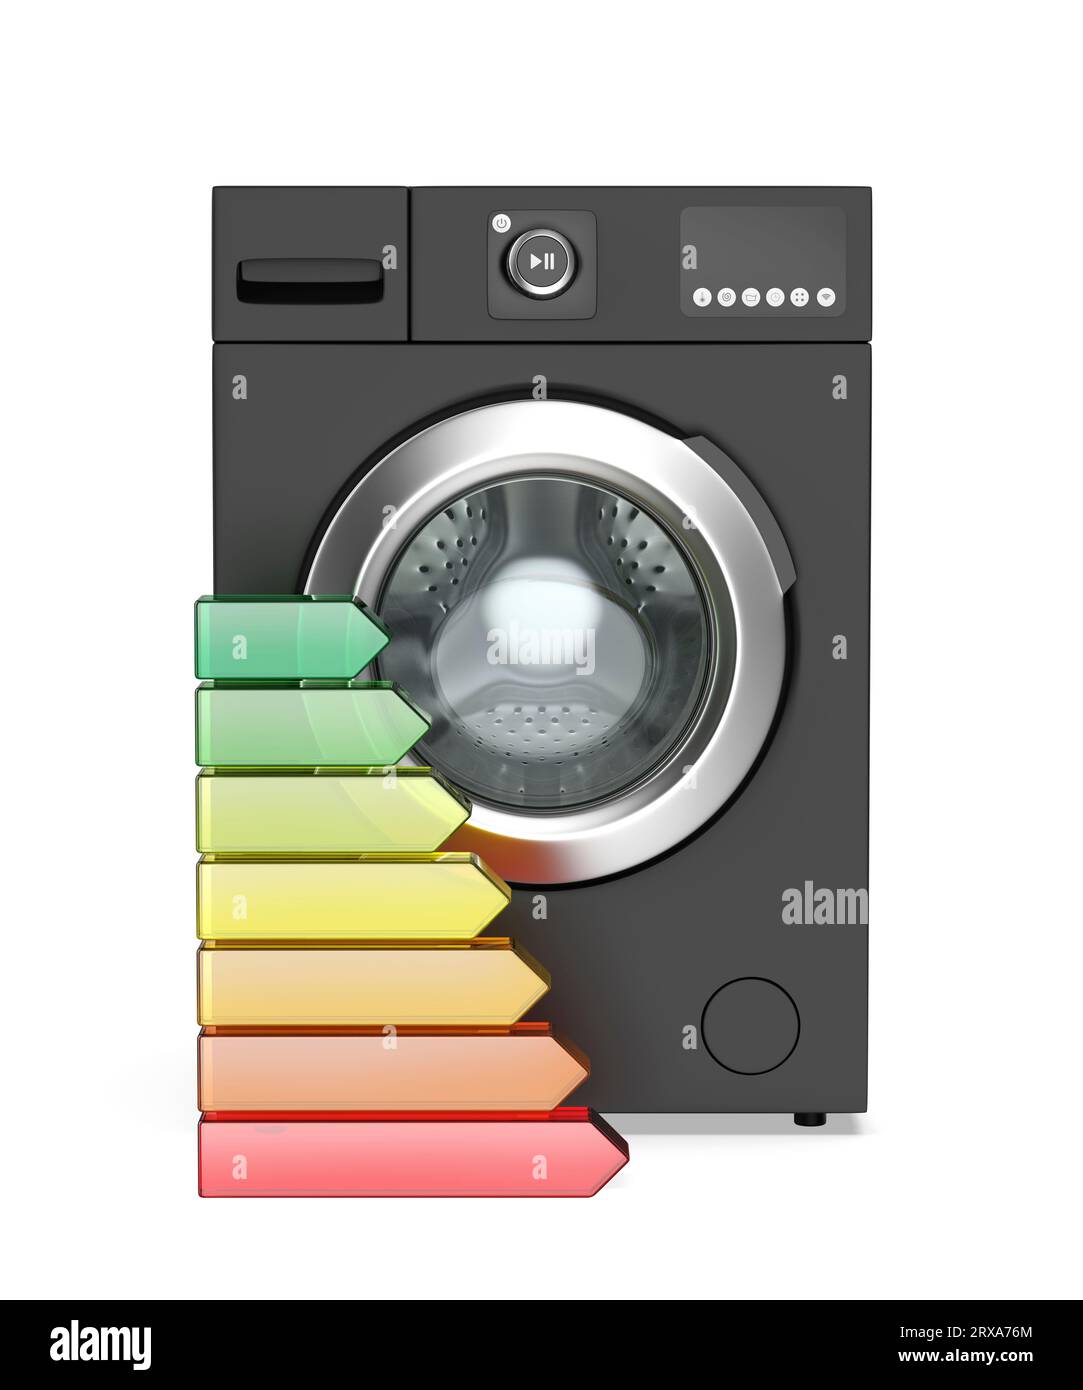 Schwarze Frontlader-Waschmaschine und Energieeffizienzstufen, Vorderansicht Stockfoto